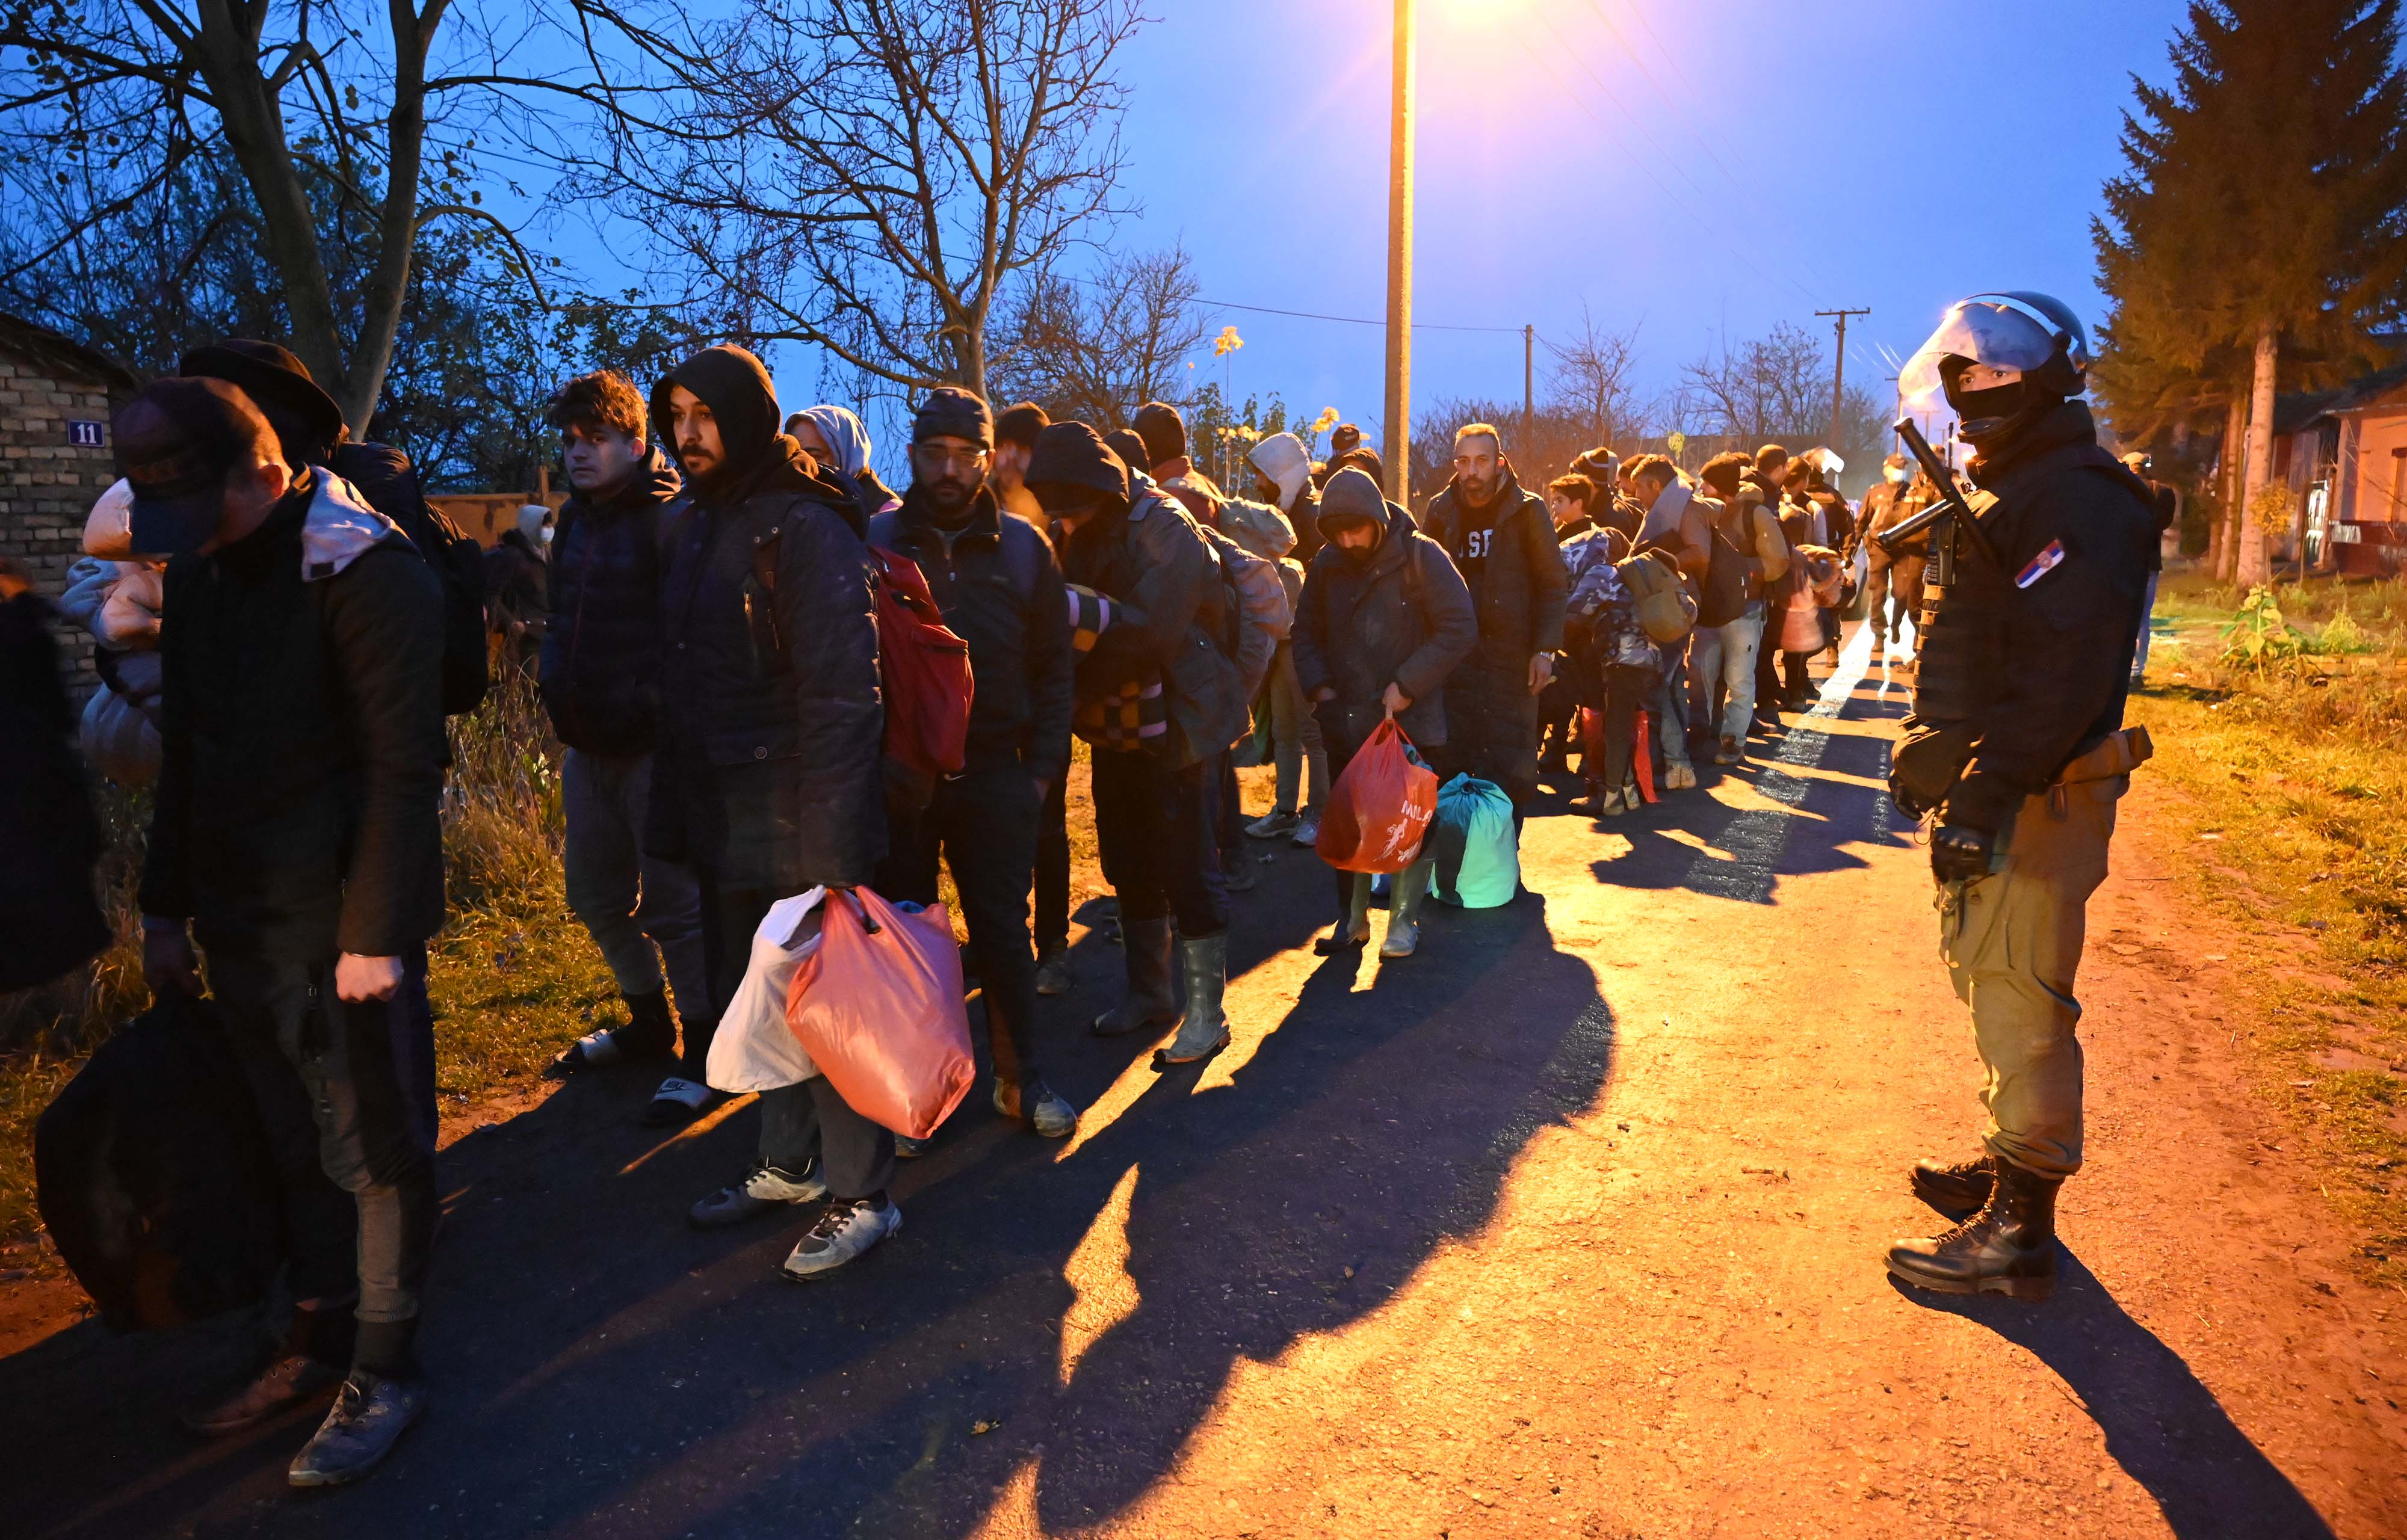 Министар Вулин: Акцијом припадника МУП-а око 450 миграната враћено у кампове и прихватне центре